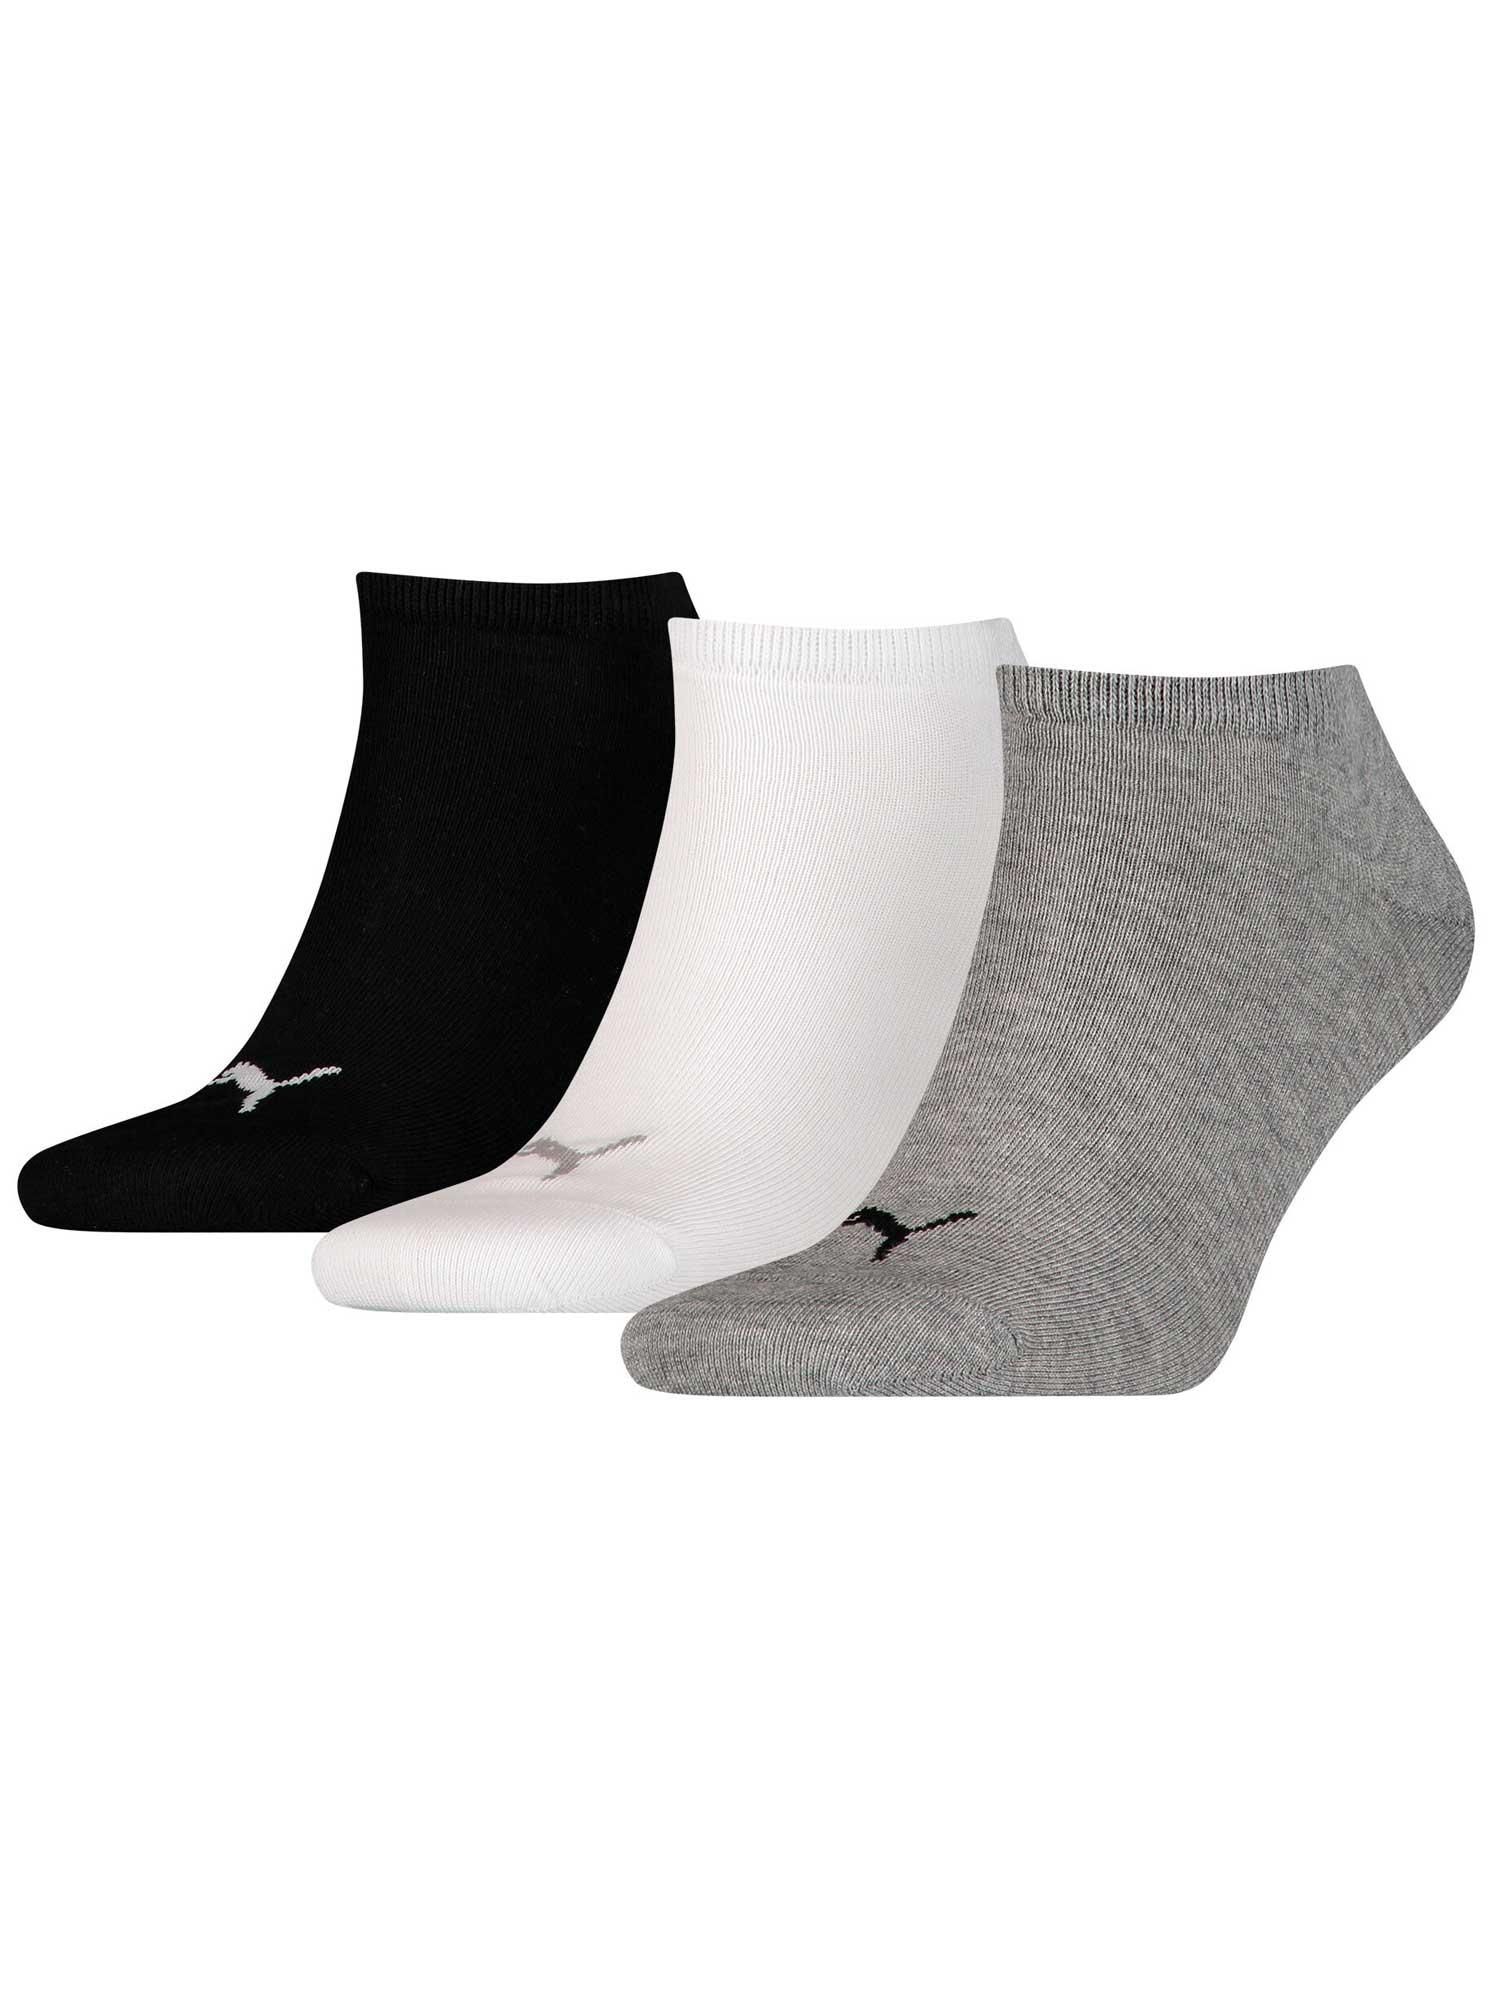 PUMA Čarape 3/1 sive, crne i bele